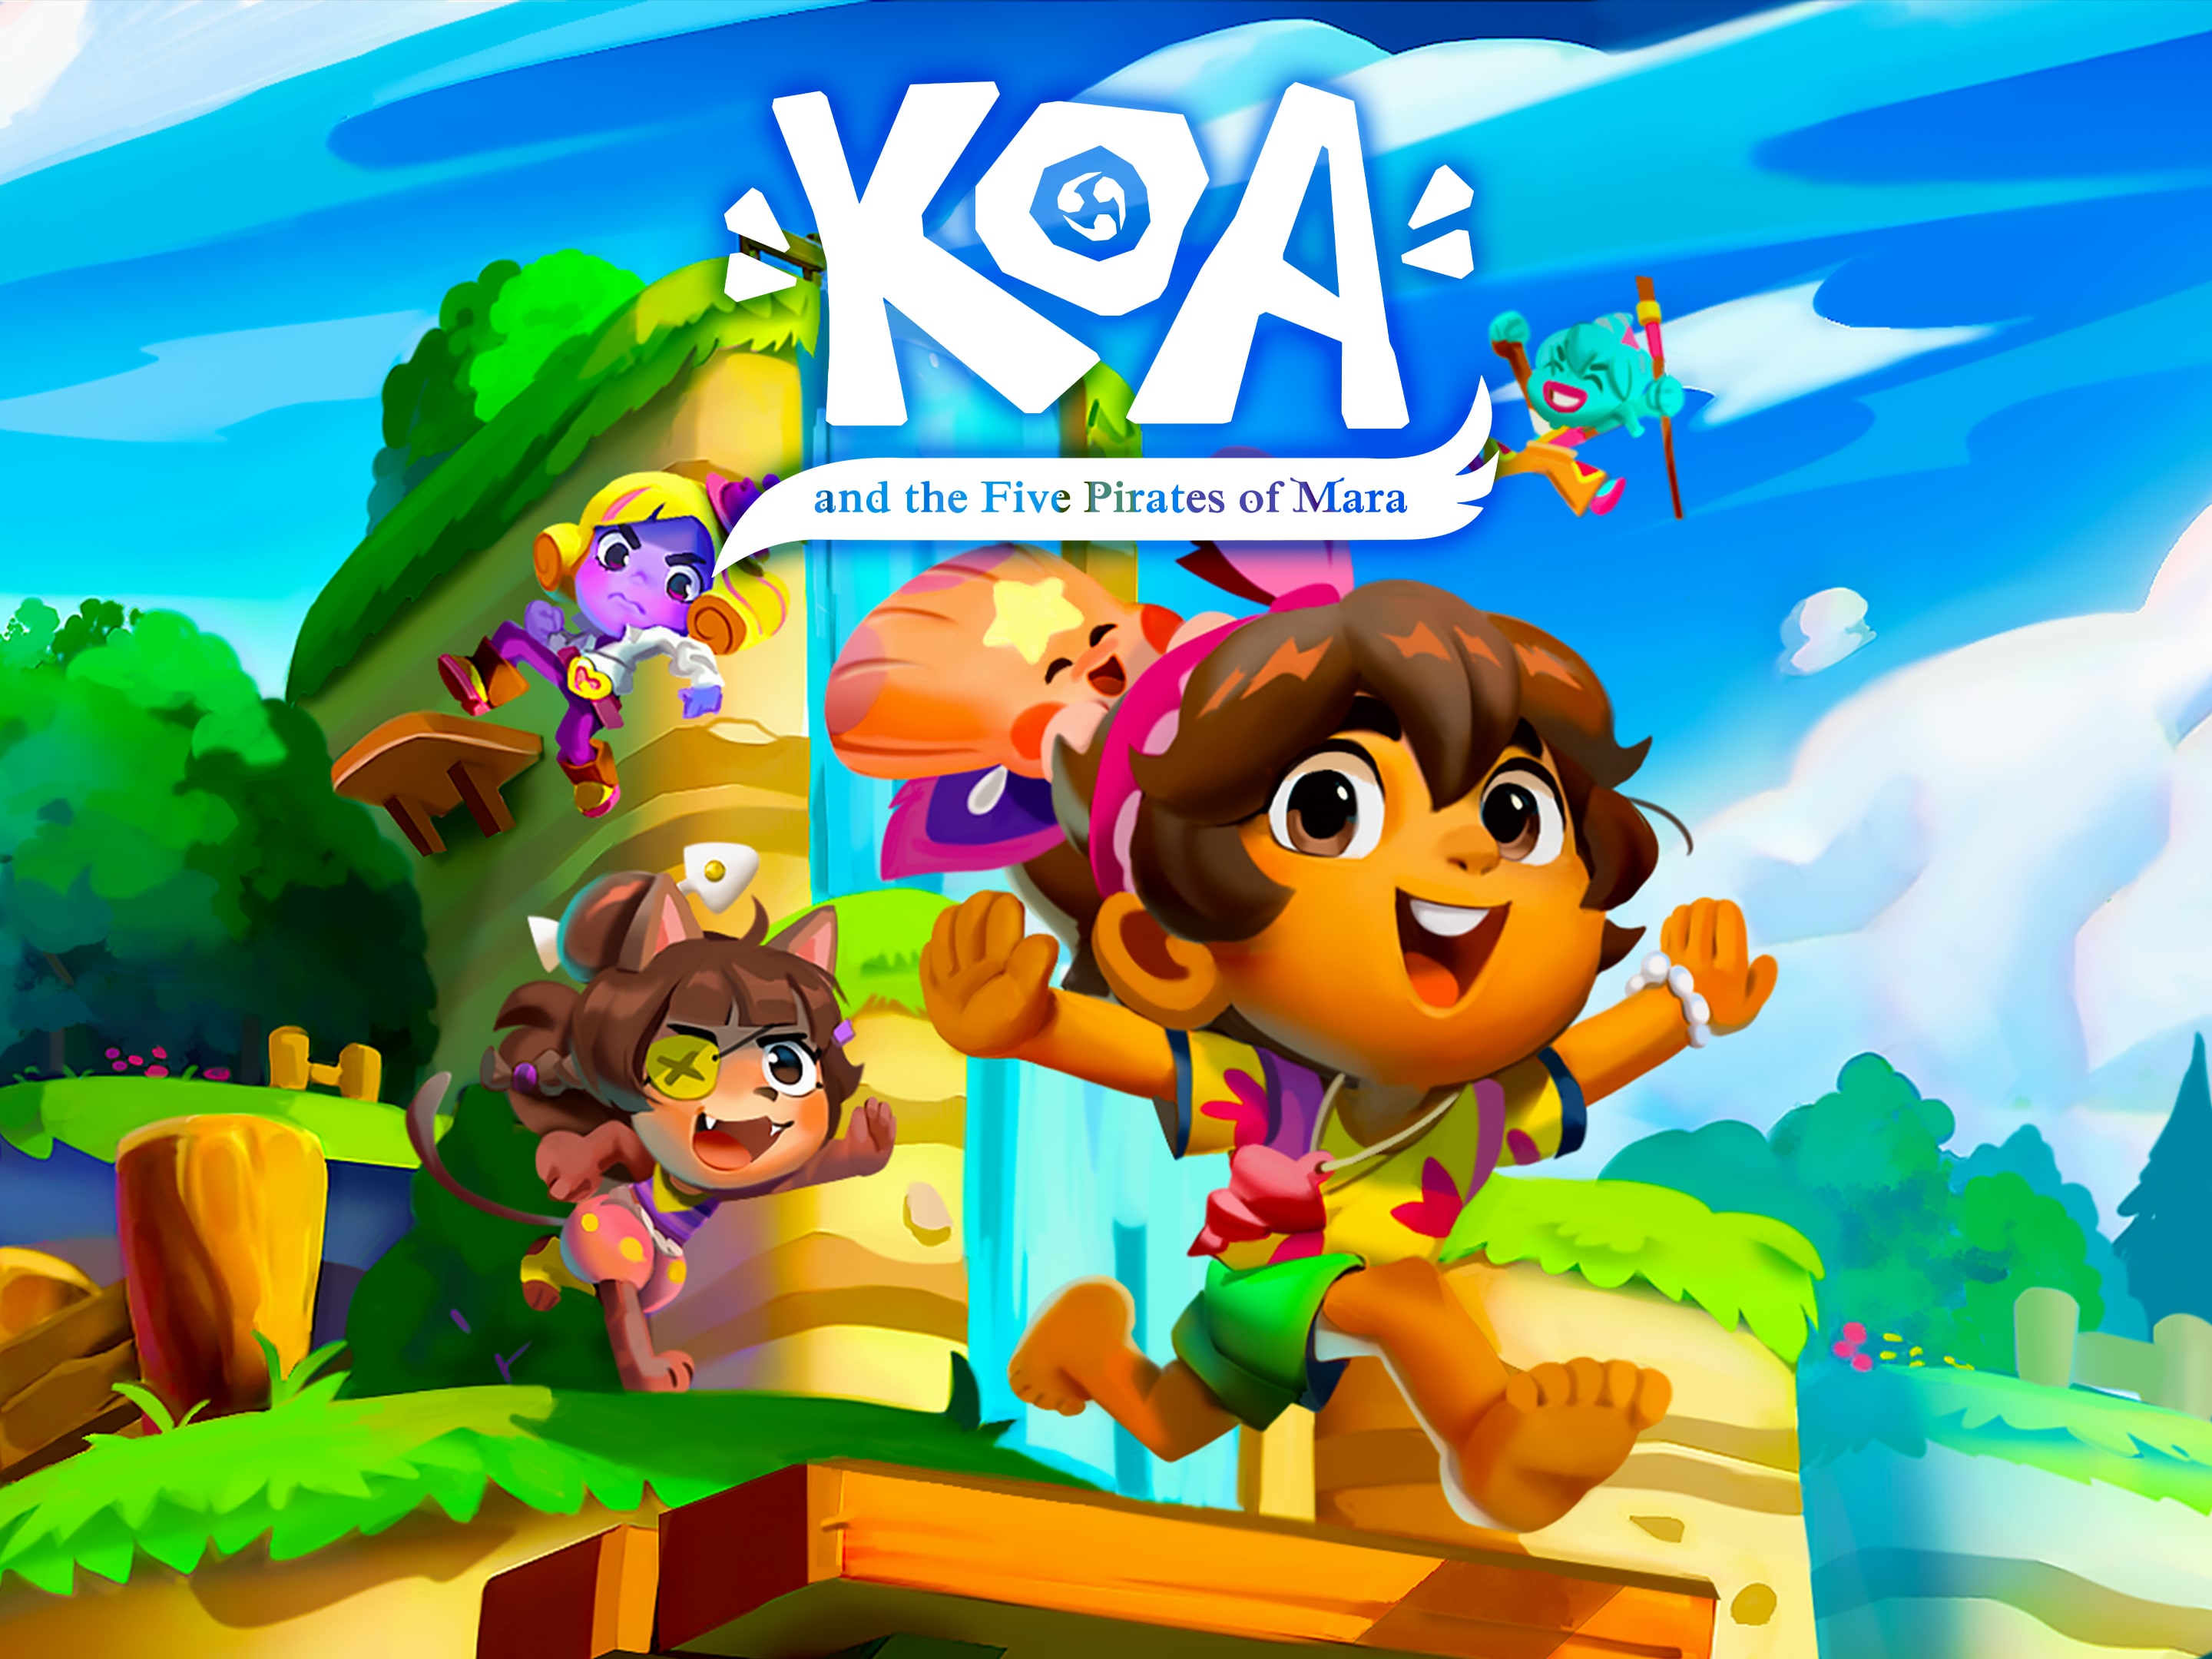 jaquette du jeu vidéo Koa and the Five Pirates of Mara